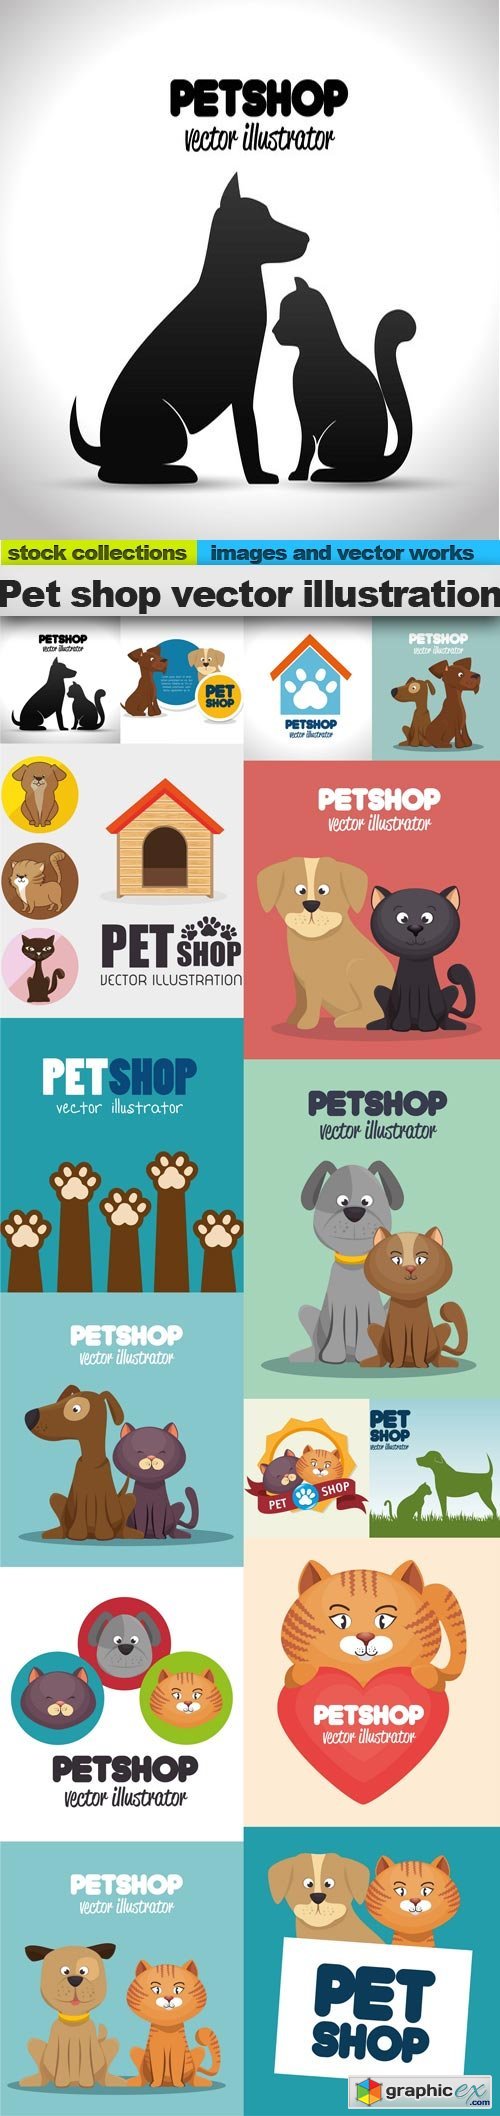 Pet shop vector illustration, 15 x EPS